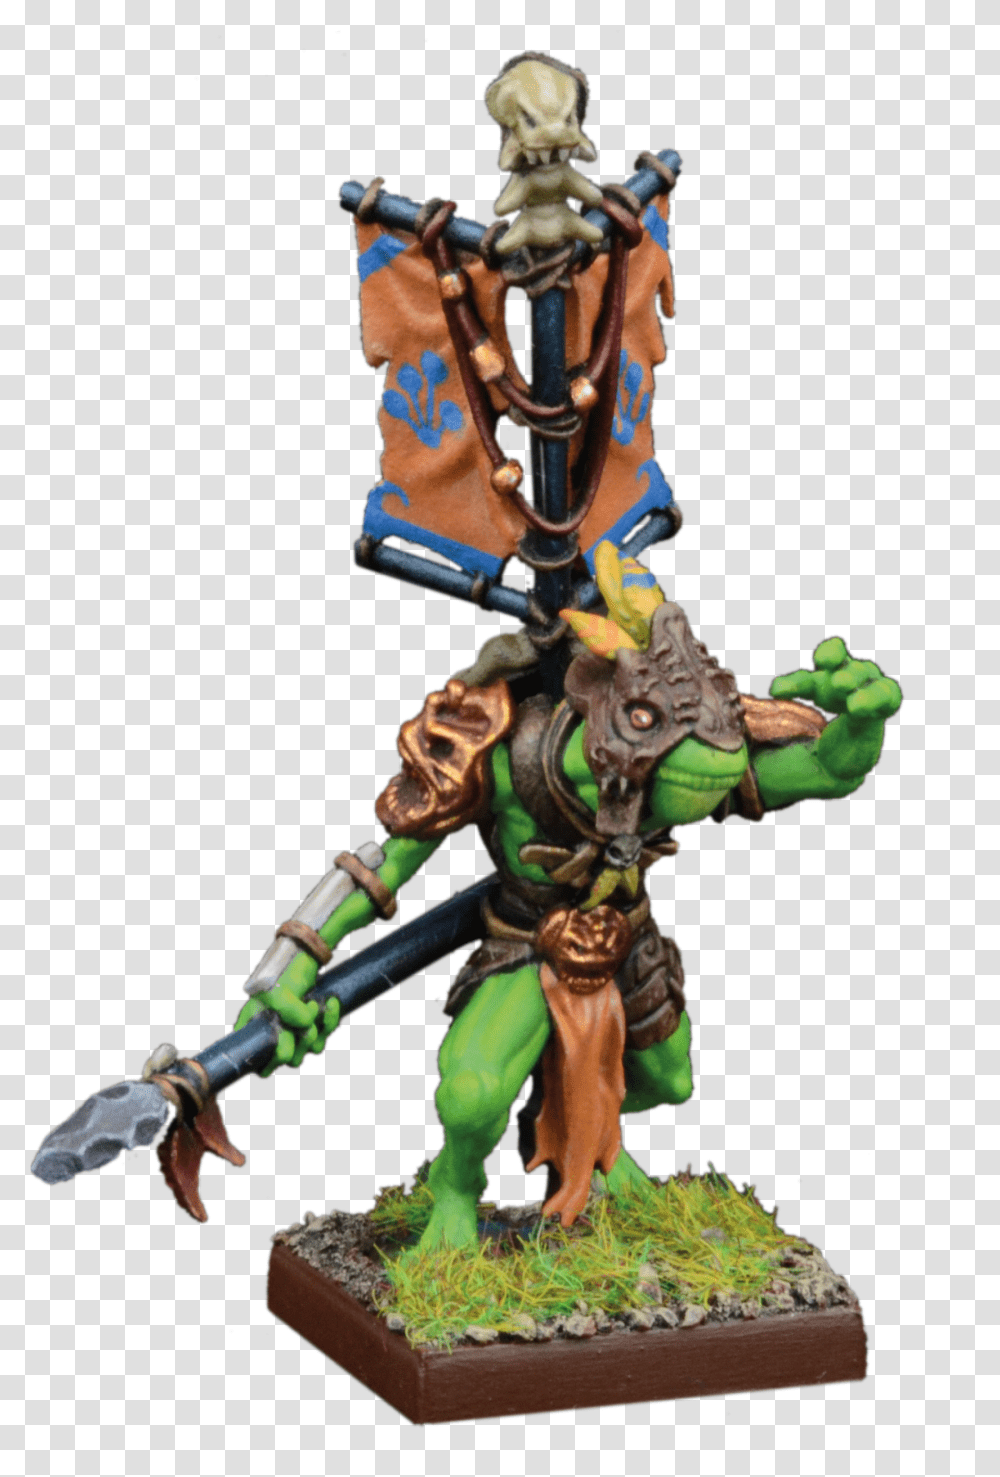 Mantic Riverguard Captain, Toy, Figurine, Legend Of Zelda, World Of Warcraft Transparent Png